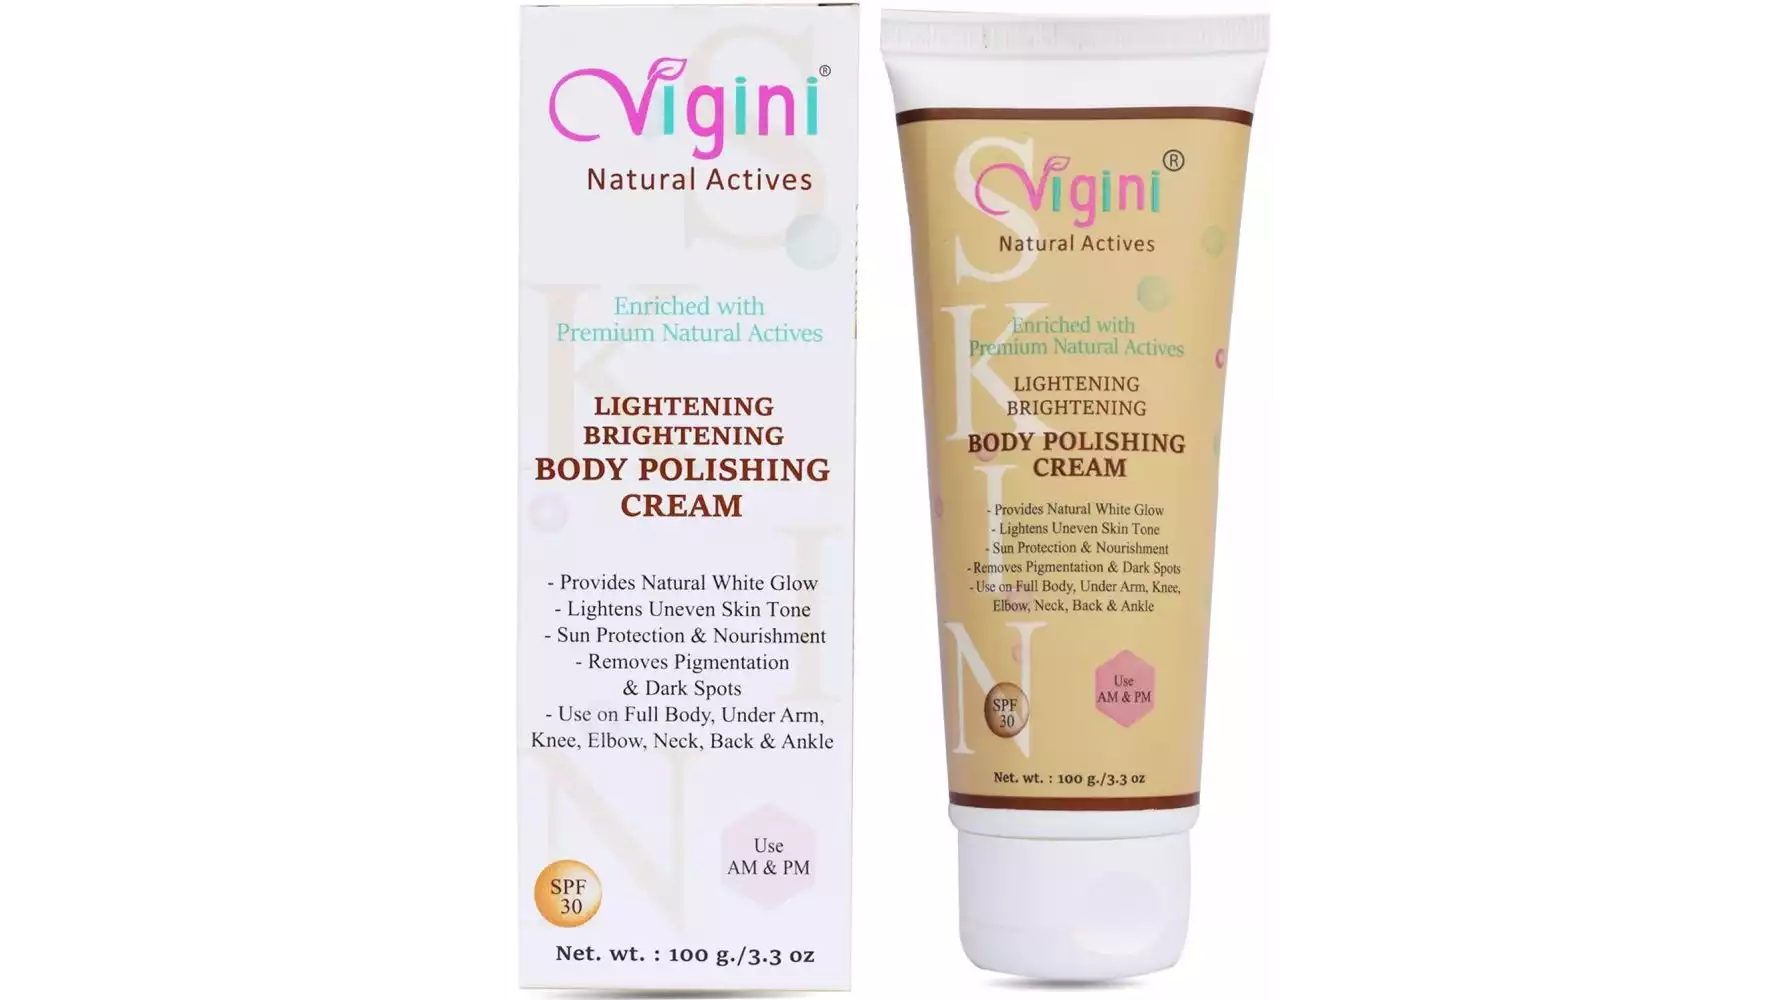 Vigini Lightening Brightening Body Polishing Cream (100g)